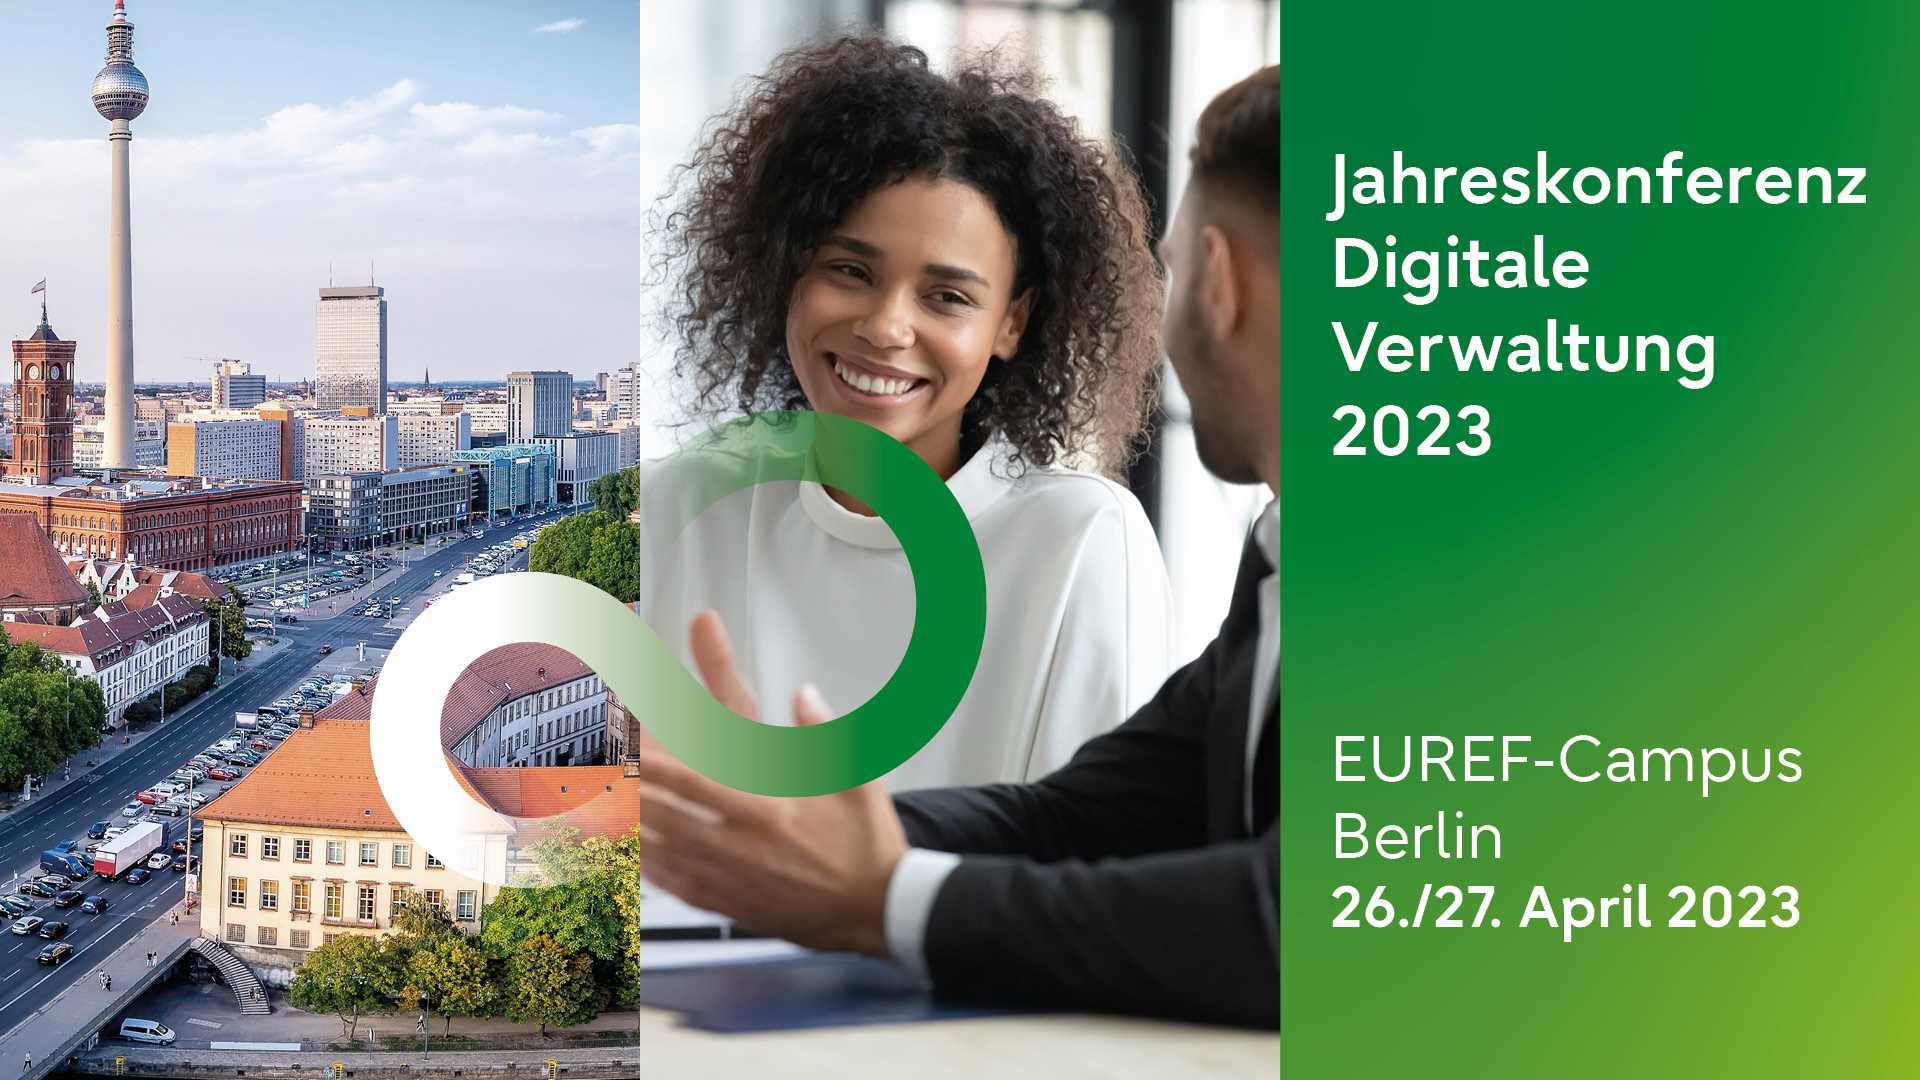 Fujitsu Jahreskonferenz Digitale Verwaltung 2023